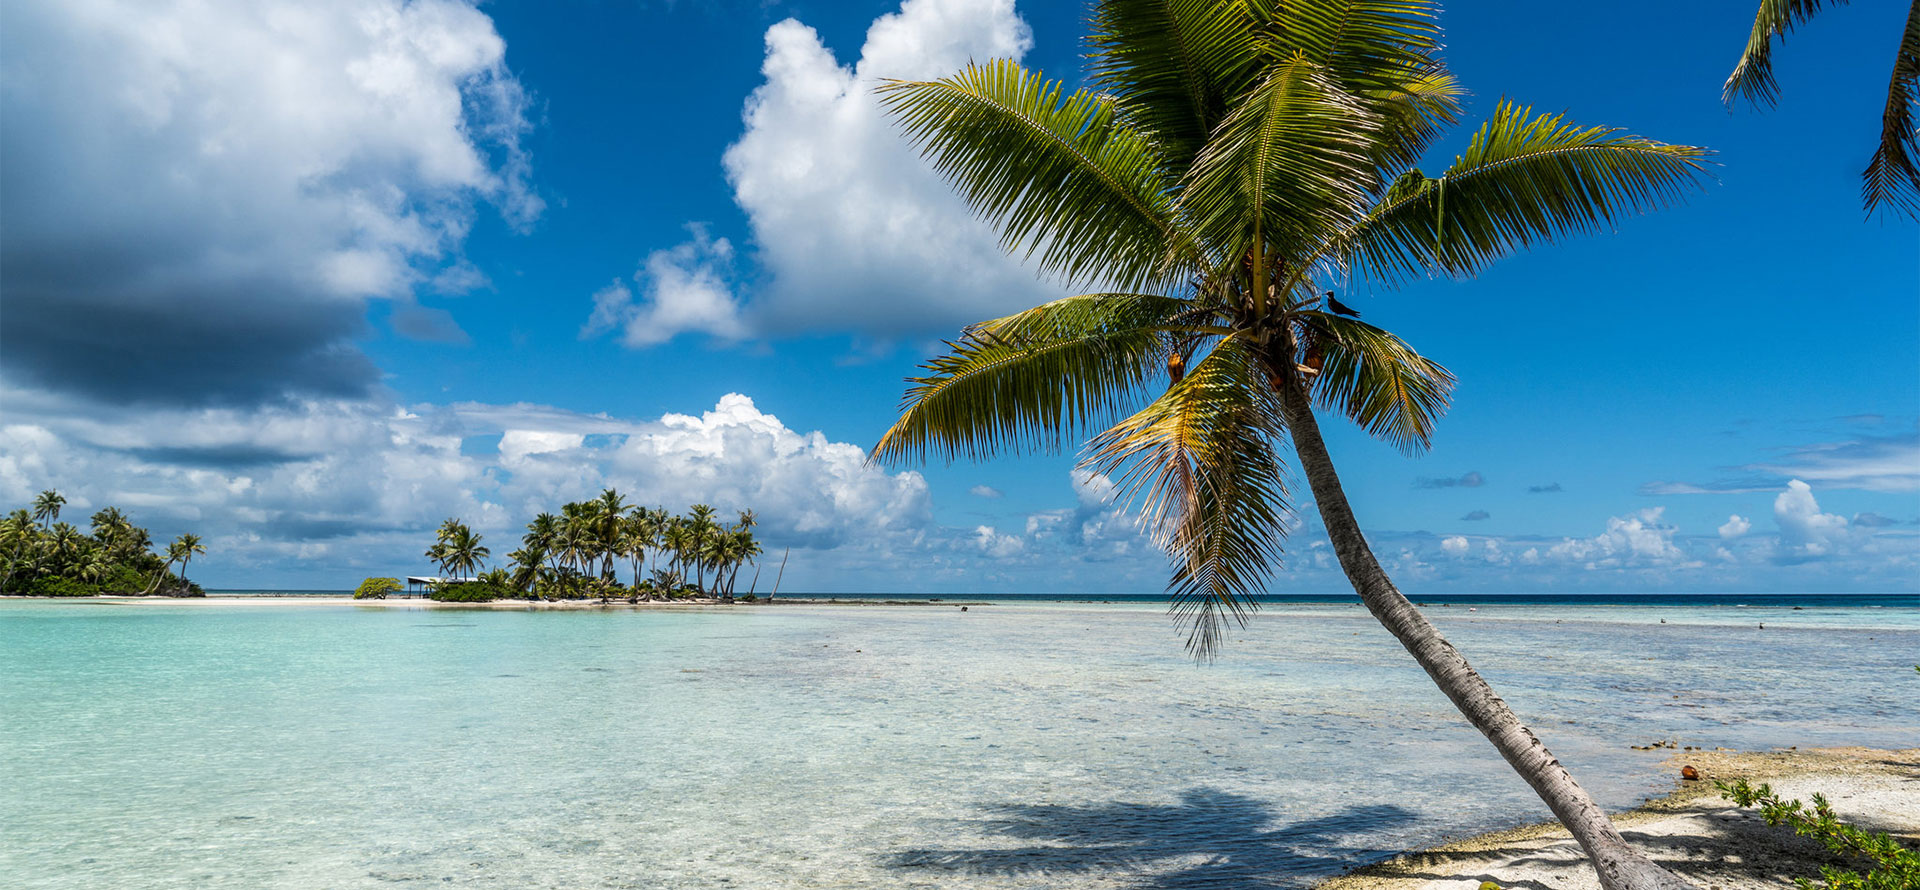 Tahiti vs hawaii palmtree.